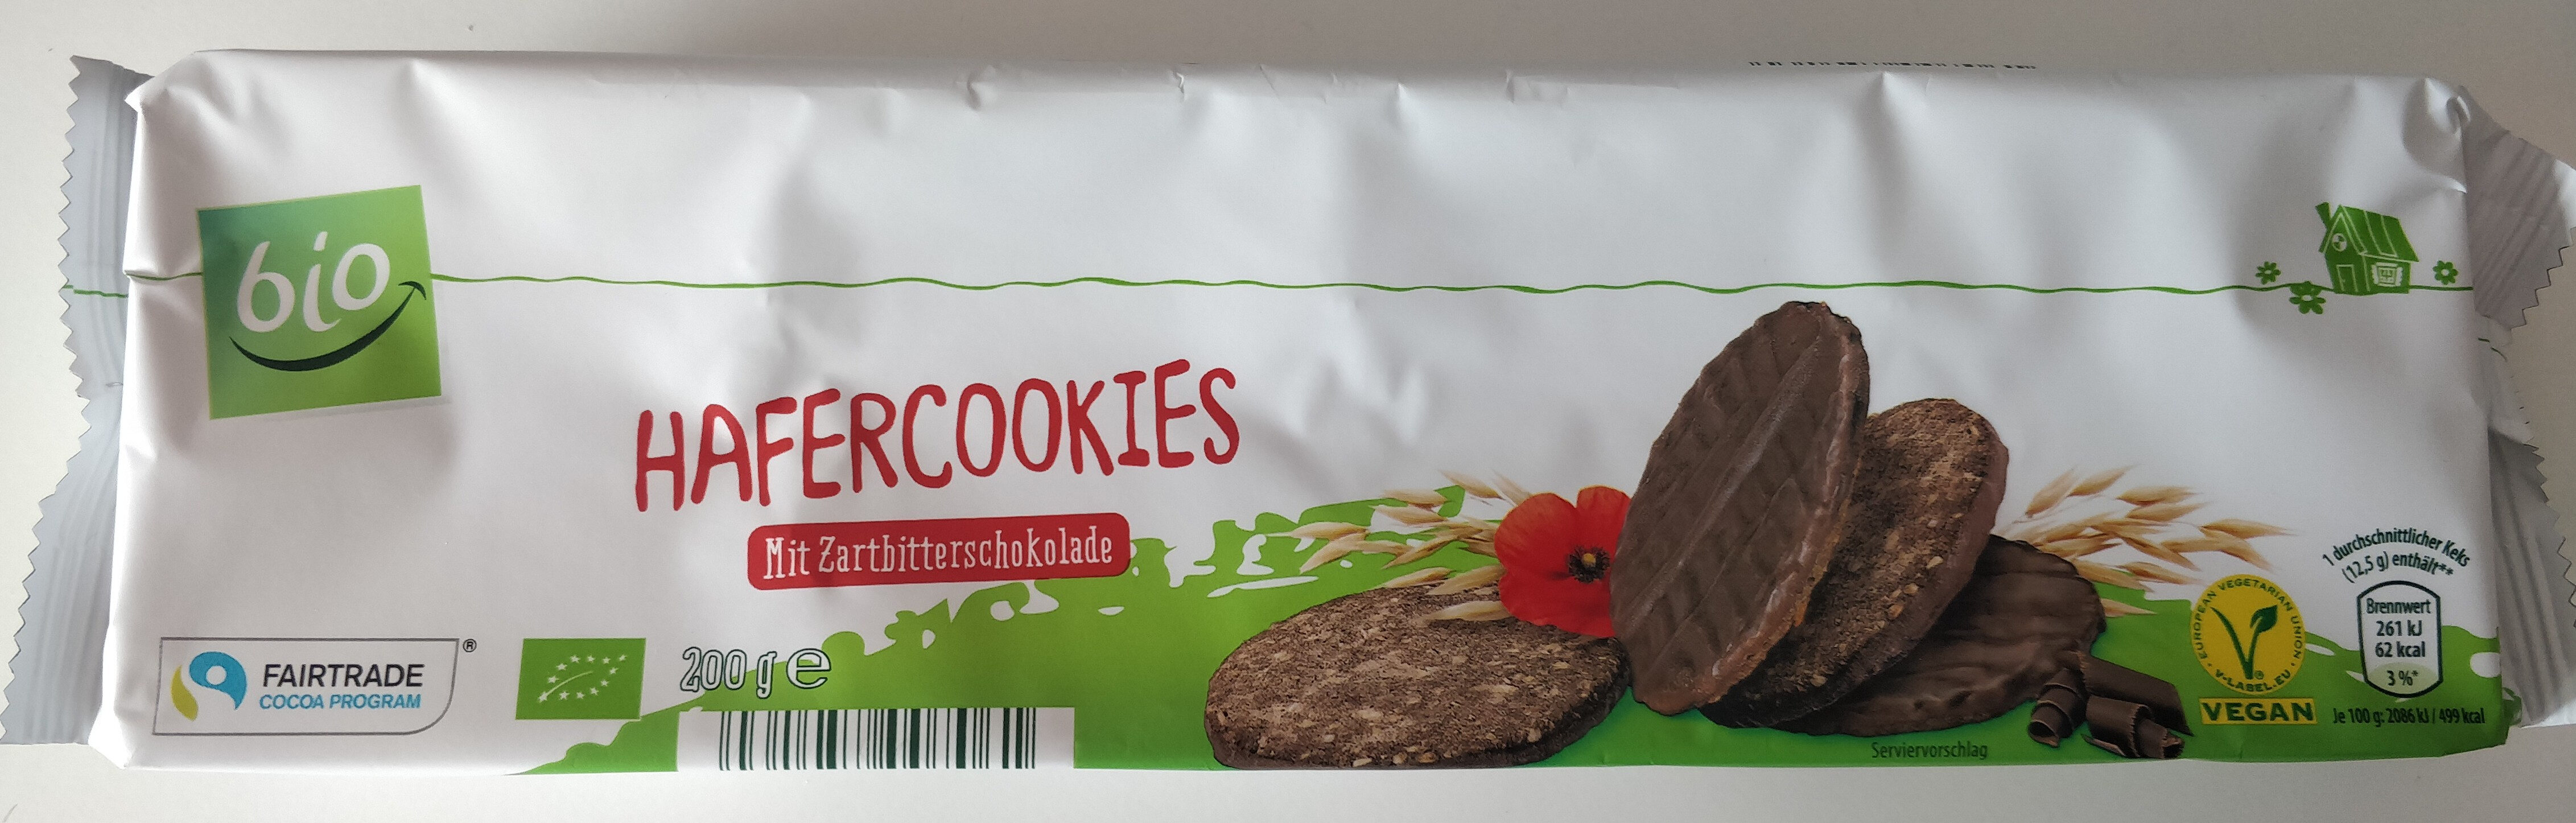 Hafercookies mit Zartbitterschokolade - Product - de